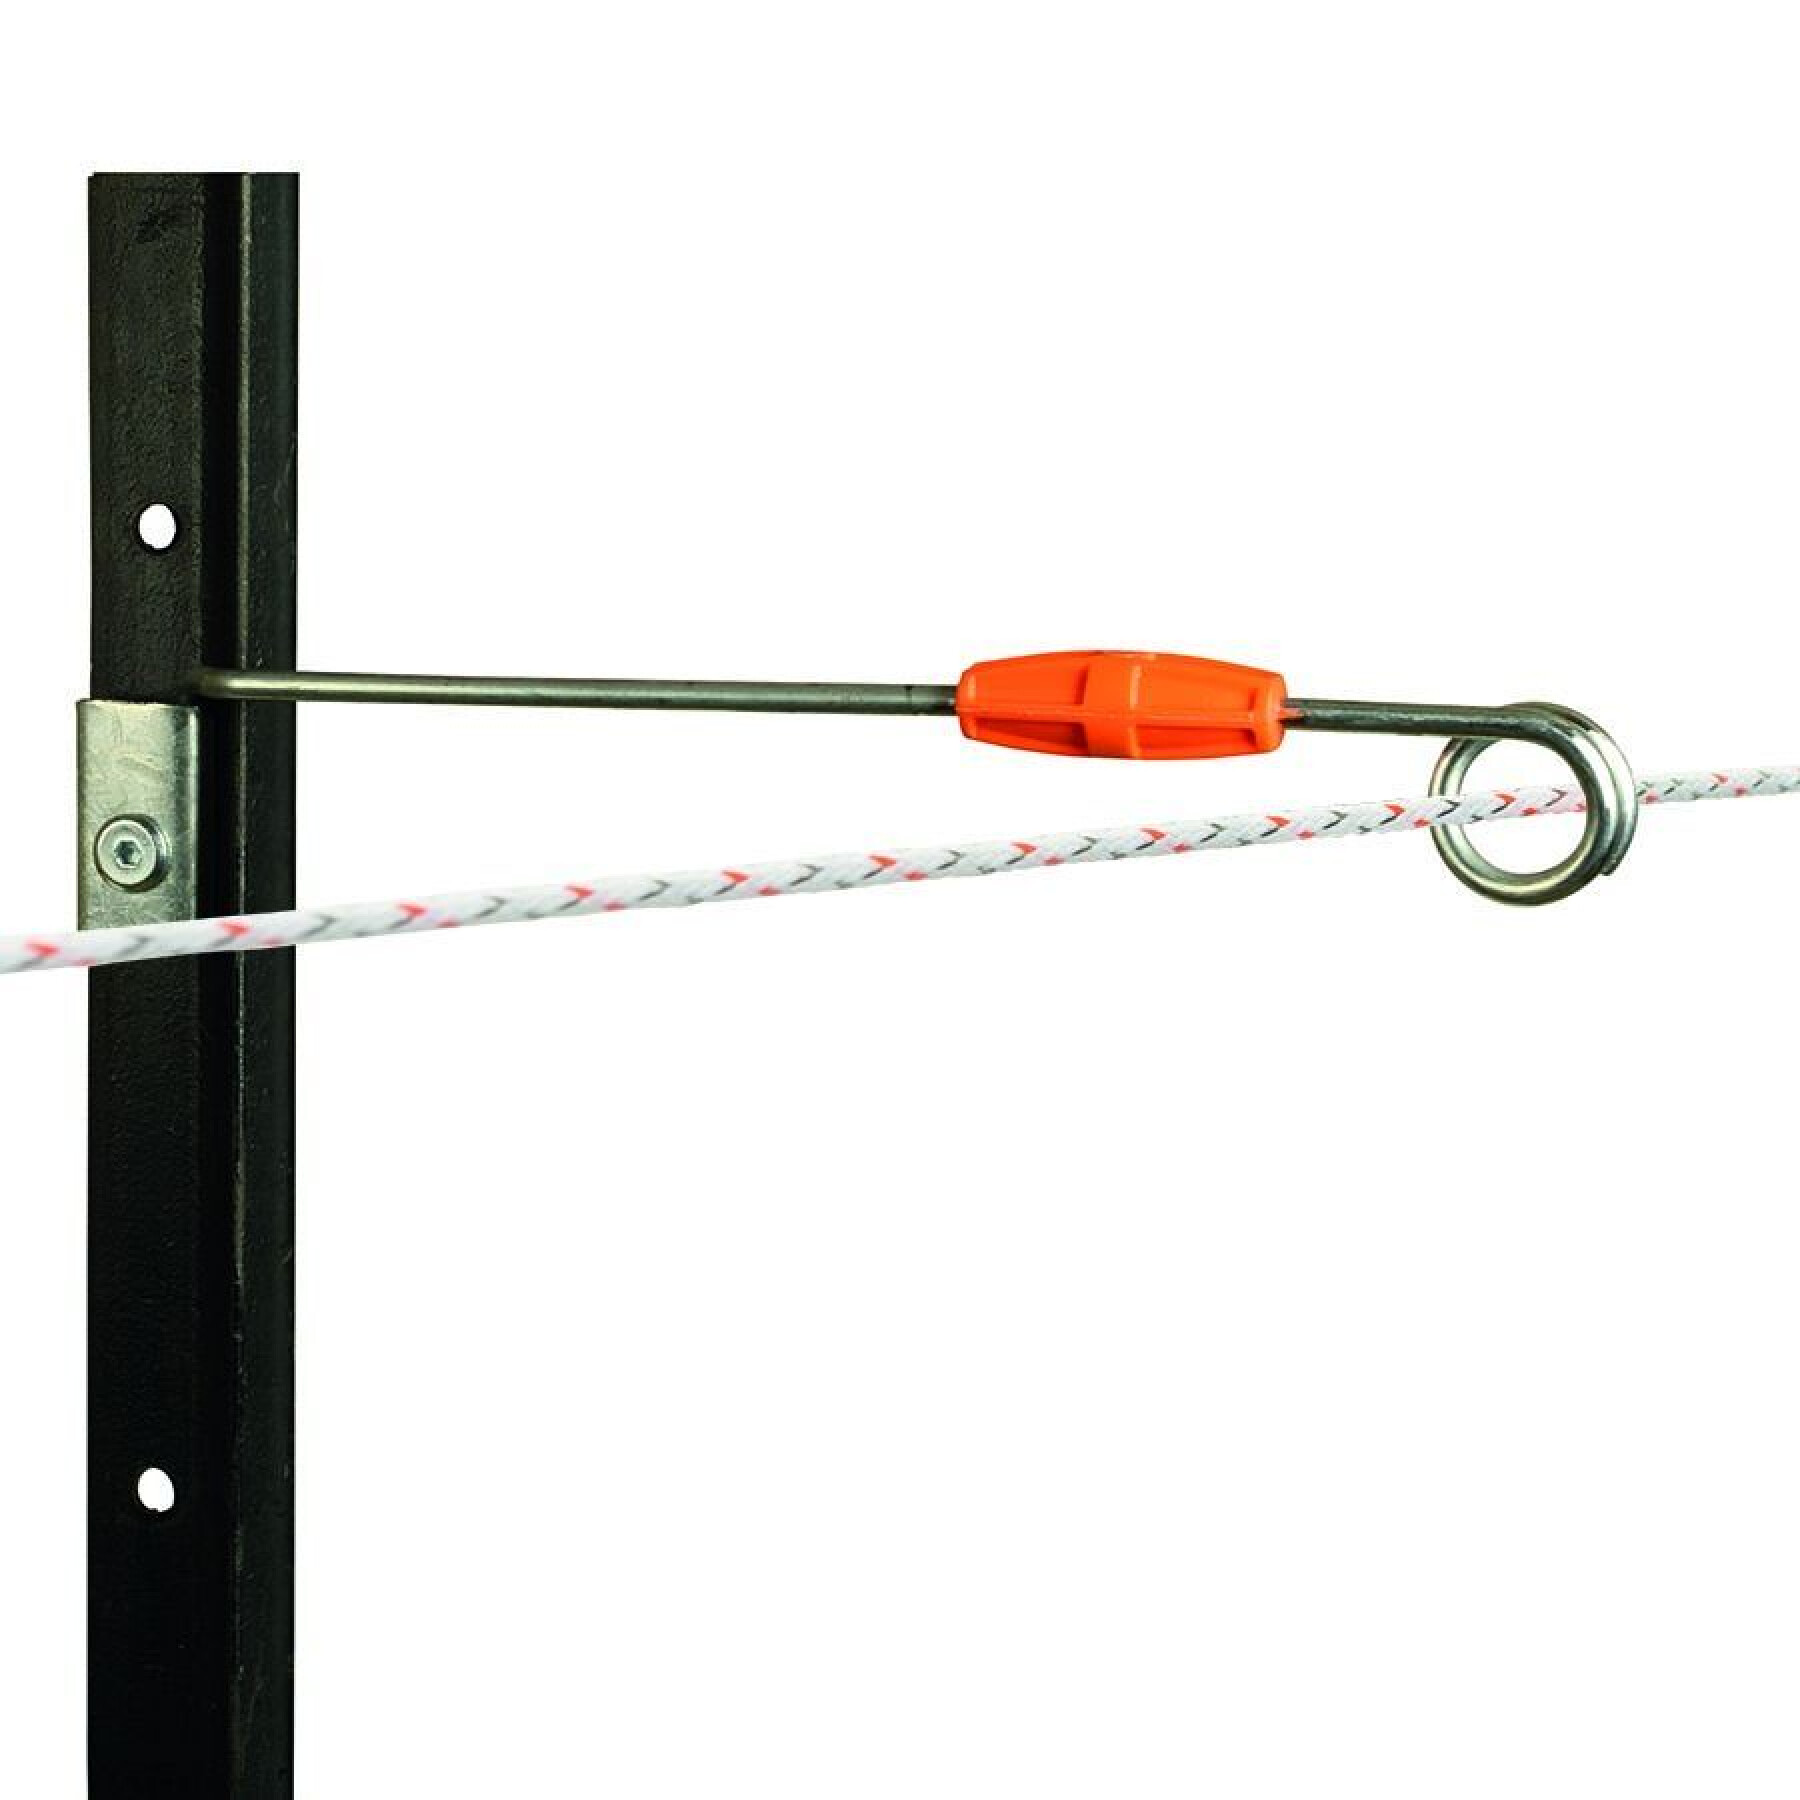 Aisladores remotos de punta viva para vallas eléctricas metálicas Gallagher (x20)